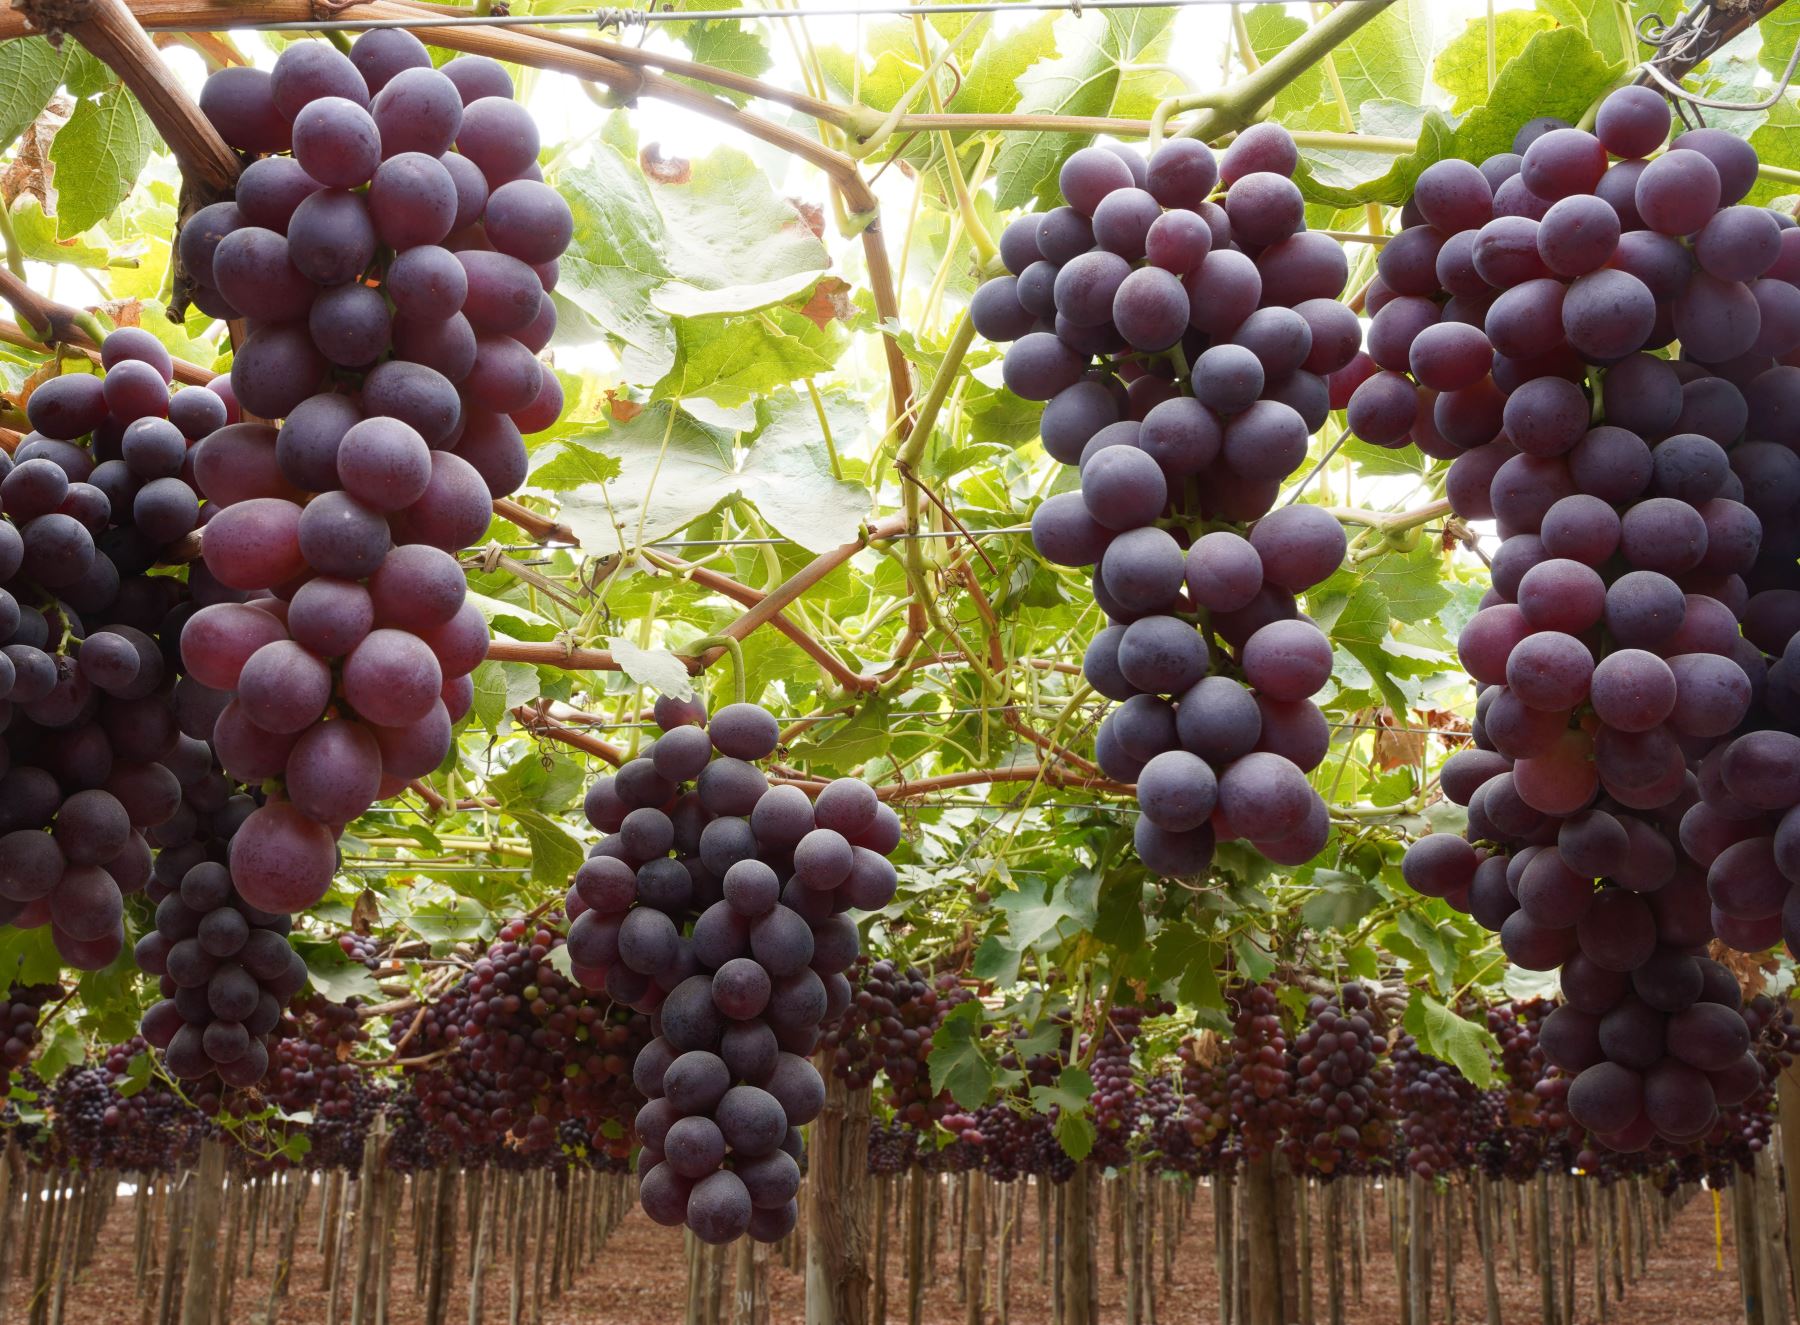 Ica es una de las principales regiones productoras y exportadoras de uva de mesa. Foto: Genry Bautista